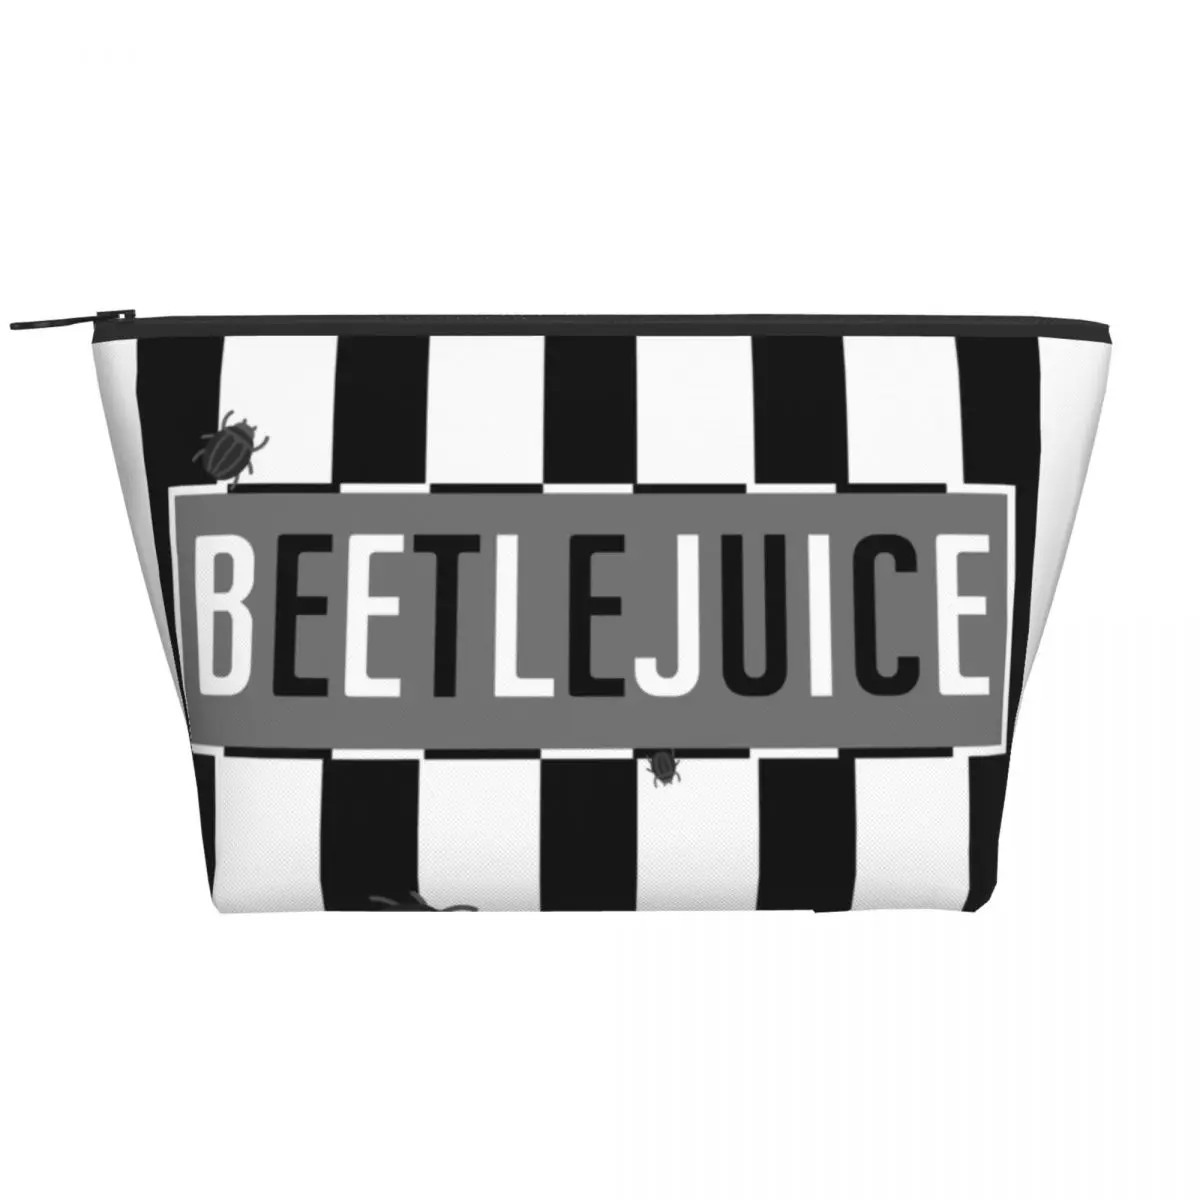 

Дорожная сумка для туалетных принадлежностей с логотипом Beetlejuice, портативная косметичка с Тимом бёртоном из фильма ужасов, органайзер для к...